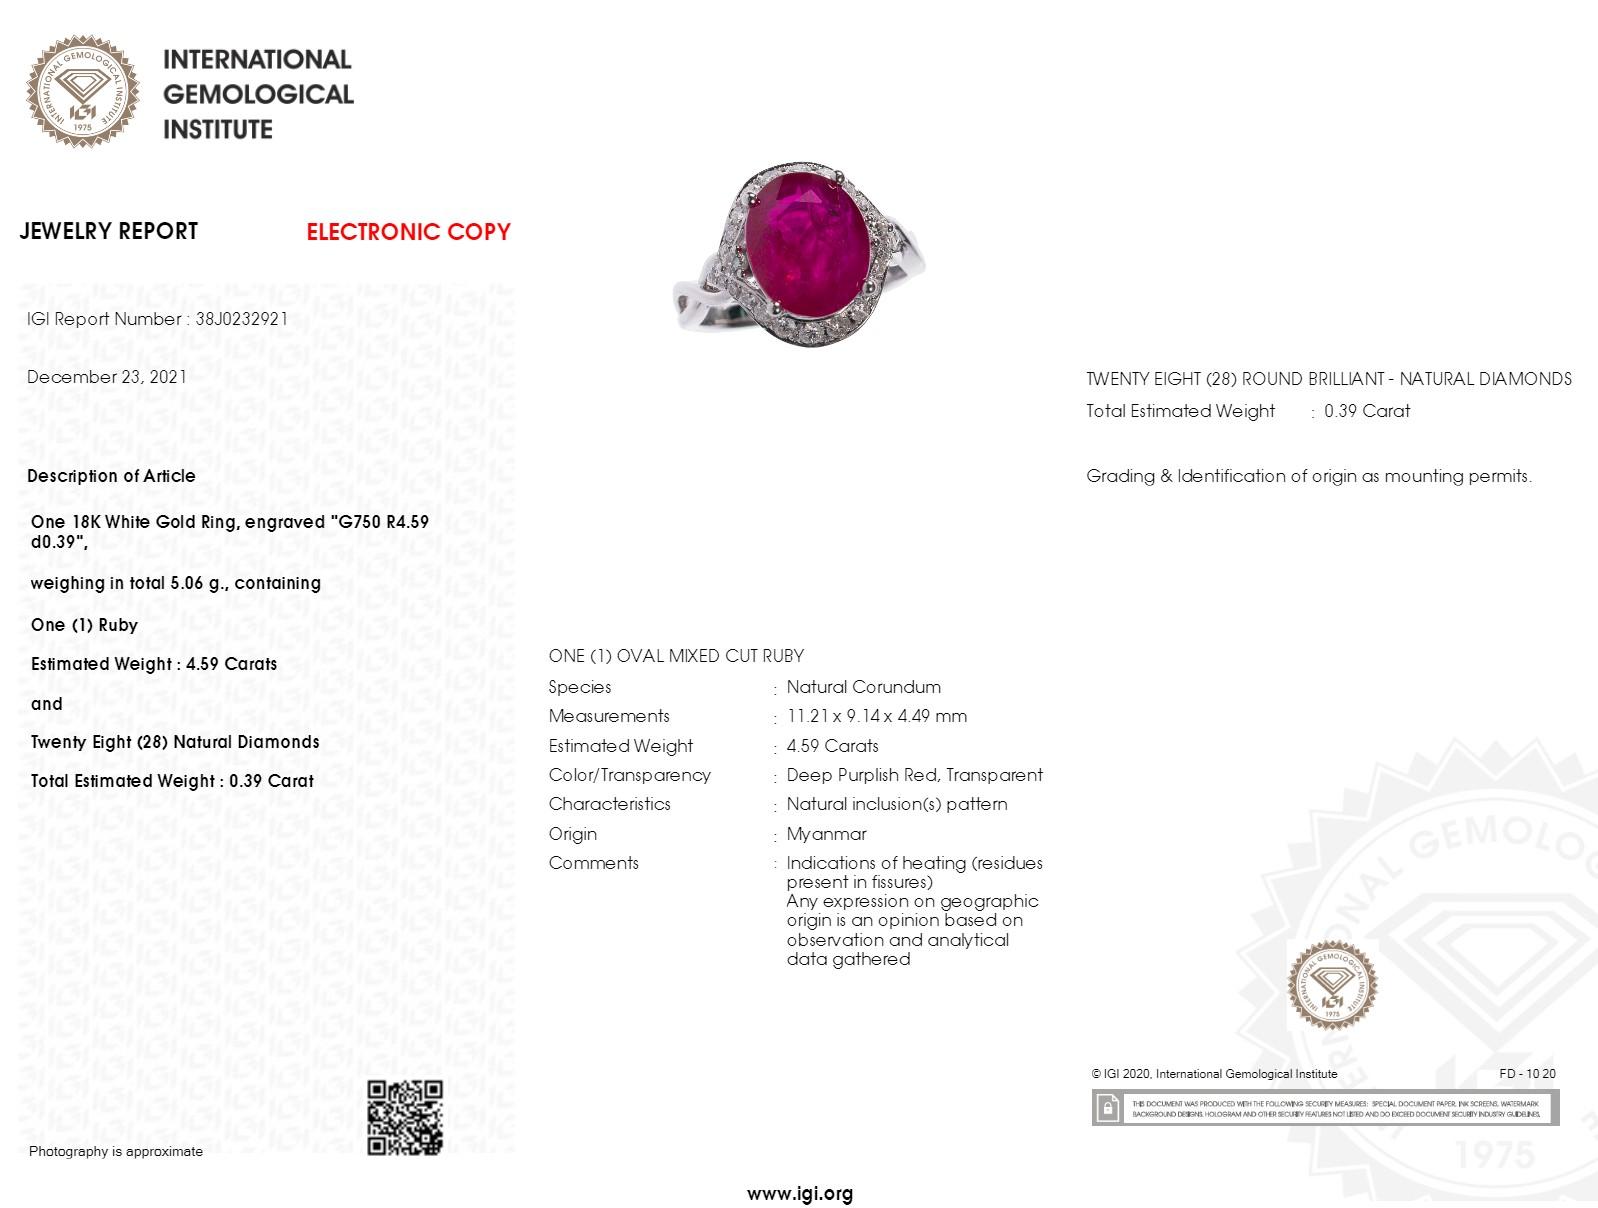 Lassen Sie sich von der faszinierenden Schönheit dieses außergewöhnlichen IGI-zertifizierten Rings mit 4,59 Karat birmanischem Rubin verzaubern. Dieses atemberaubende Schmuckstück aus 18-karätigem Weißgold strahlt Luxus und Raffinesse aus und ist